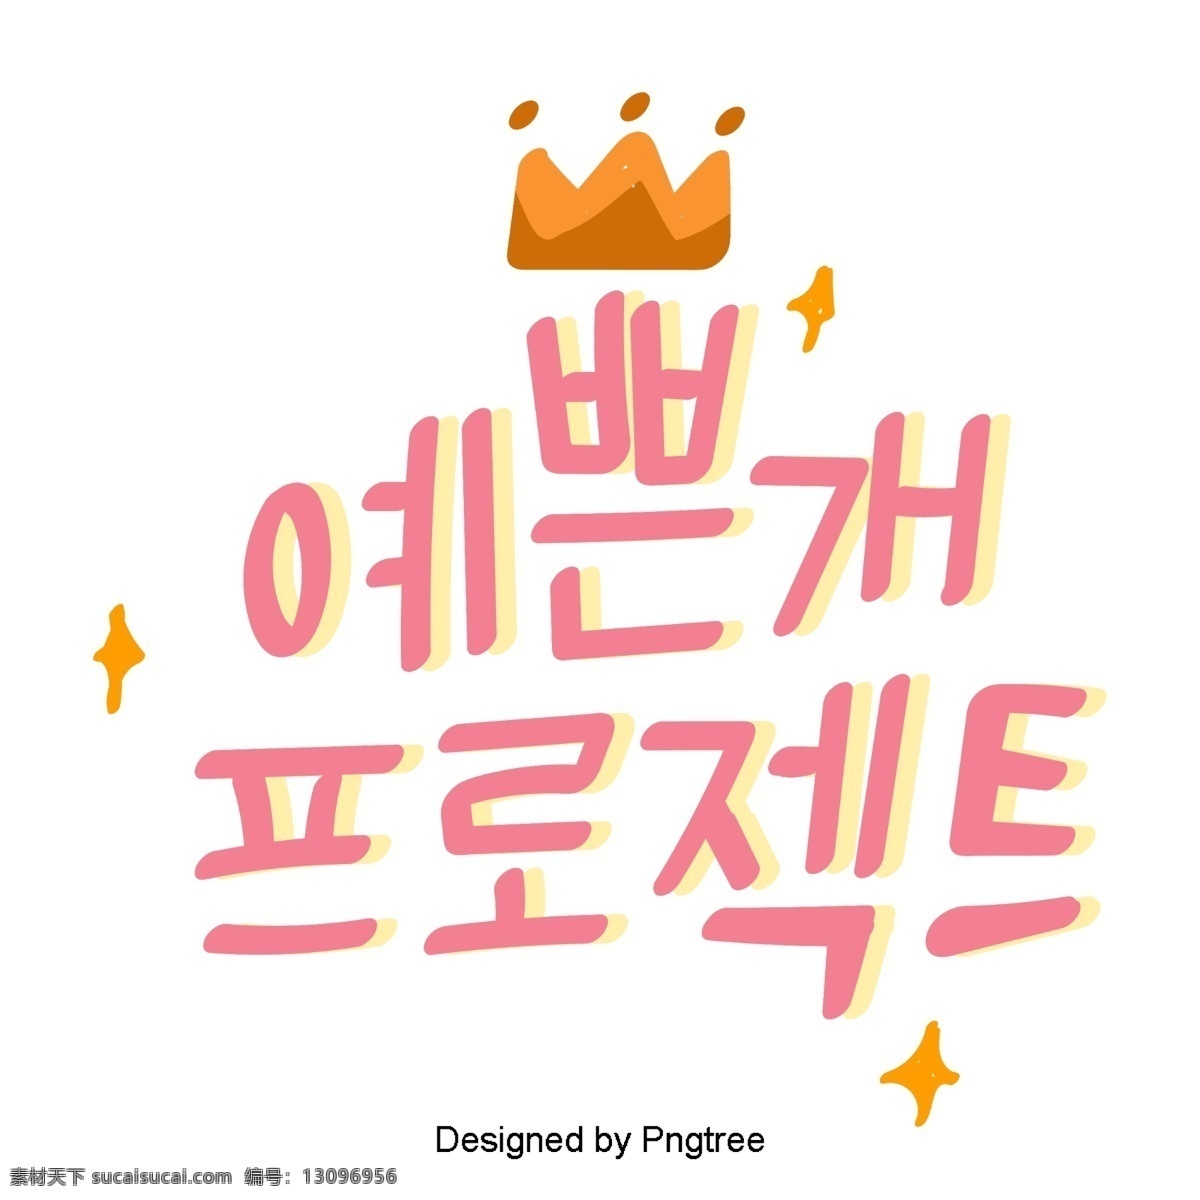 韩国 美丽 粉红色 狗 可爱 的卡 通 风格 字体 元素 黄色 字形 甜茶 ai材料 贴纸 动画片 样式 宠物 心脏形 黄 条 漂亮 小狗